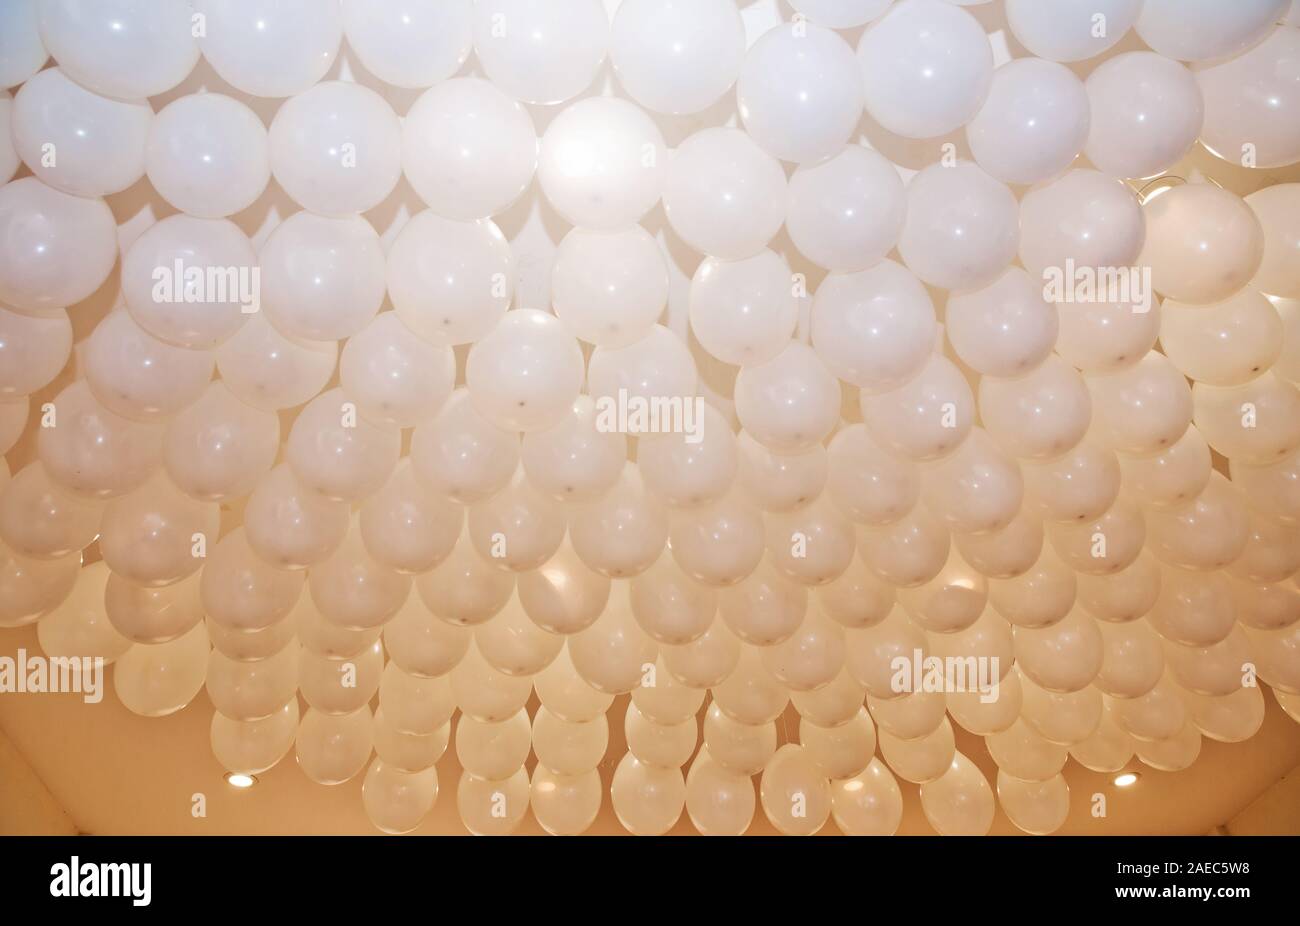 https://c8.alamy.com/compfr/2aec5w8/un-mariage-ou-une-fete-d-anniversaire-enfants-interieur-decoration-ballons-a-l-helium-ballons-blanc-flotter-sur-le-plafond-blanc-dans-la-chambre-pour-le-parti-2aec5w8.jpg